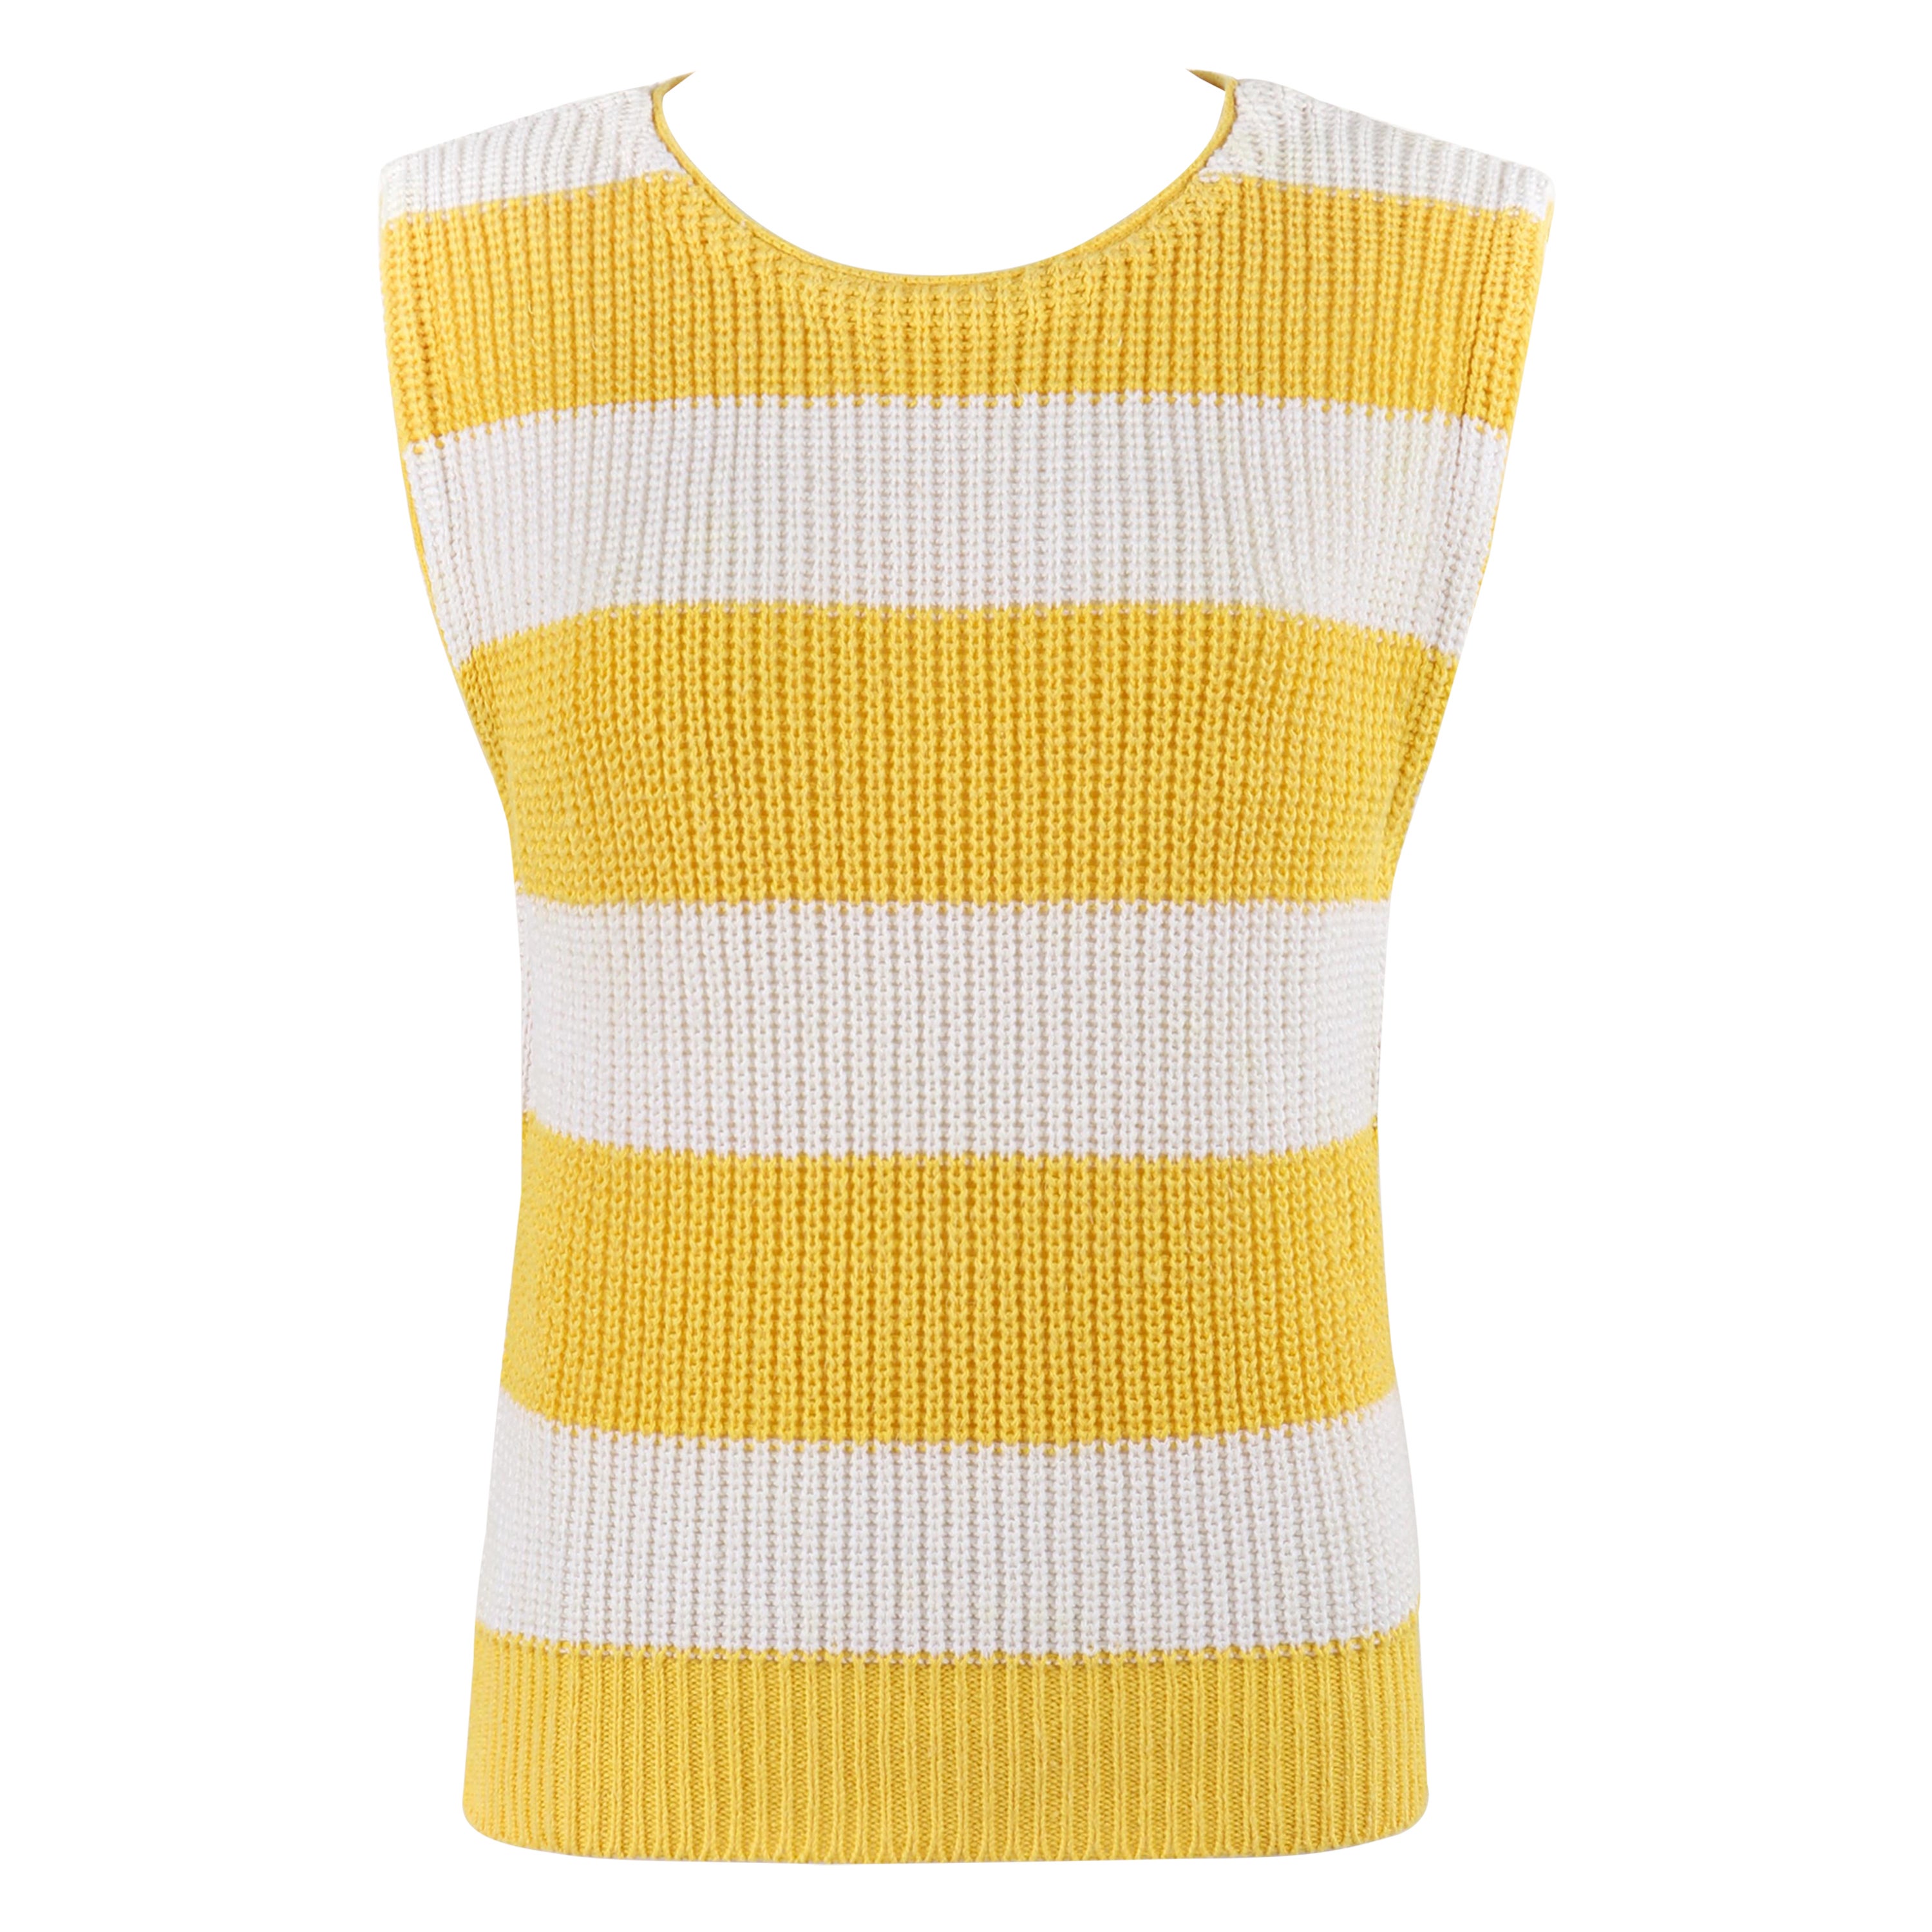 DIANE VON FURSTENBERG - Pull sans manches en tricot rayé jaune et blanc, années 1980 en vente